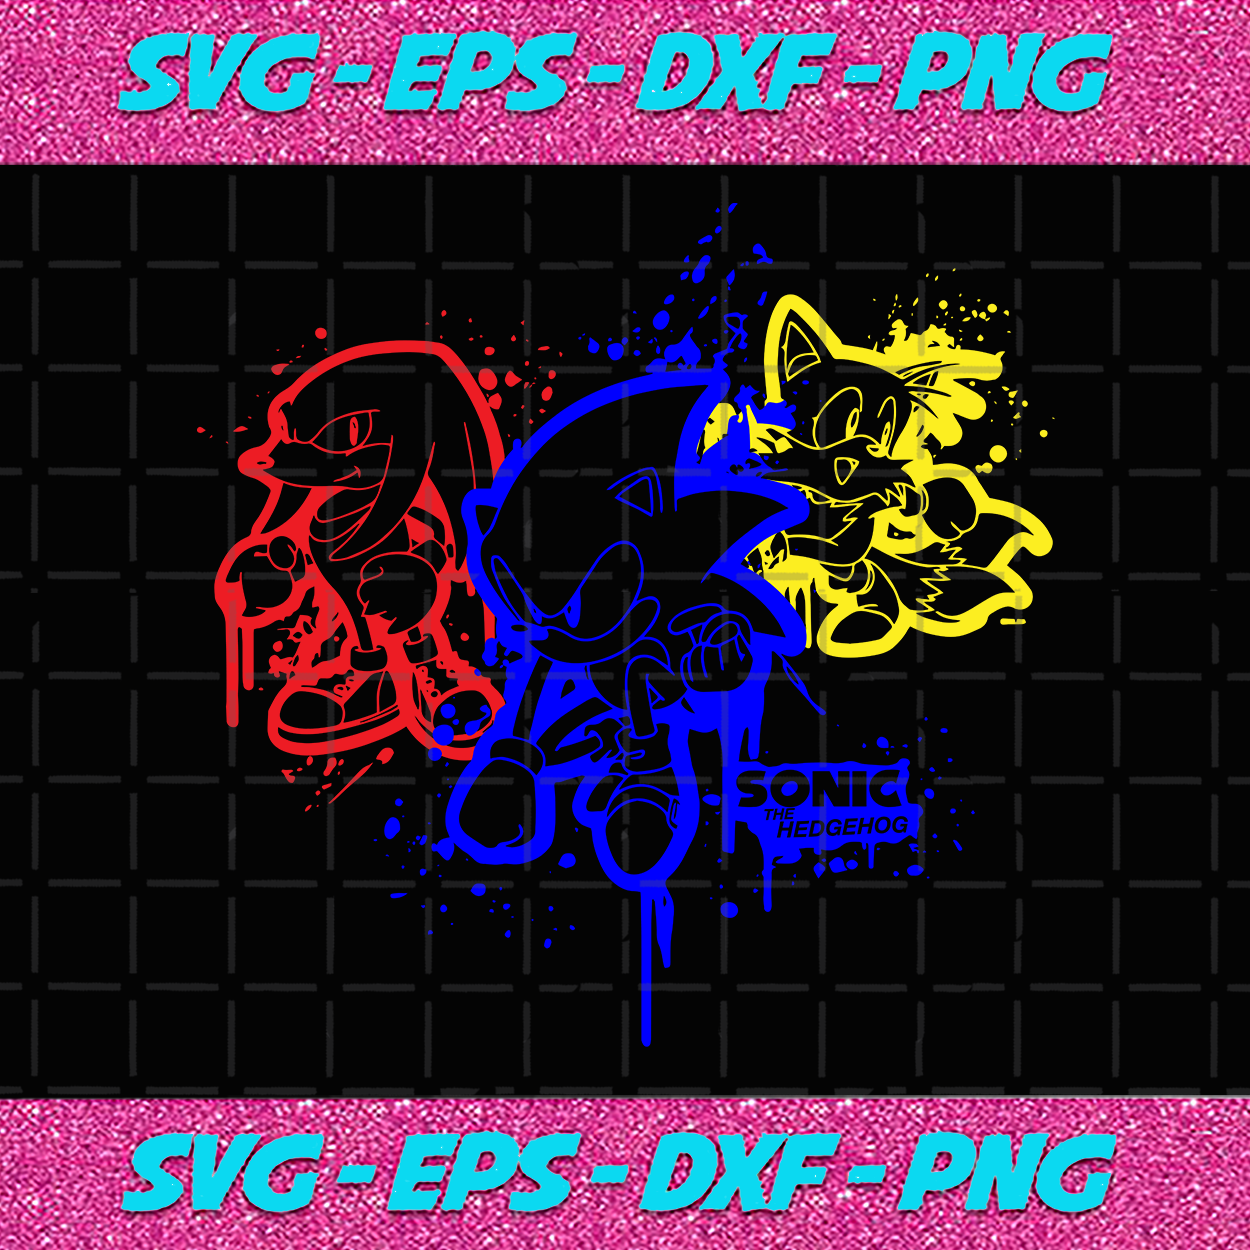 Download Sonic The Hedgehog Svg Sonic Svg Tails Svg Easy Cut Amy Svg Hedge Bundlefunny SVG, PNG, EPS, DXF File